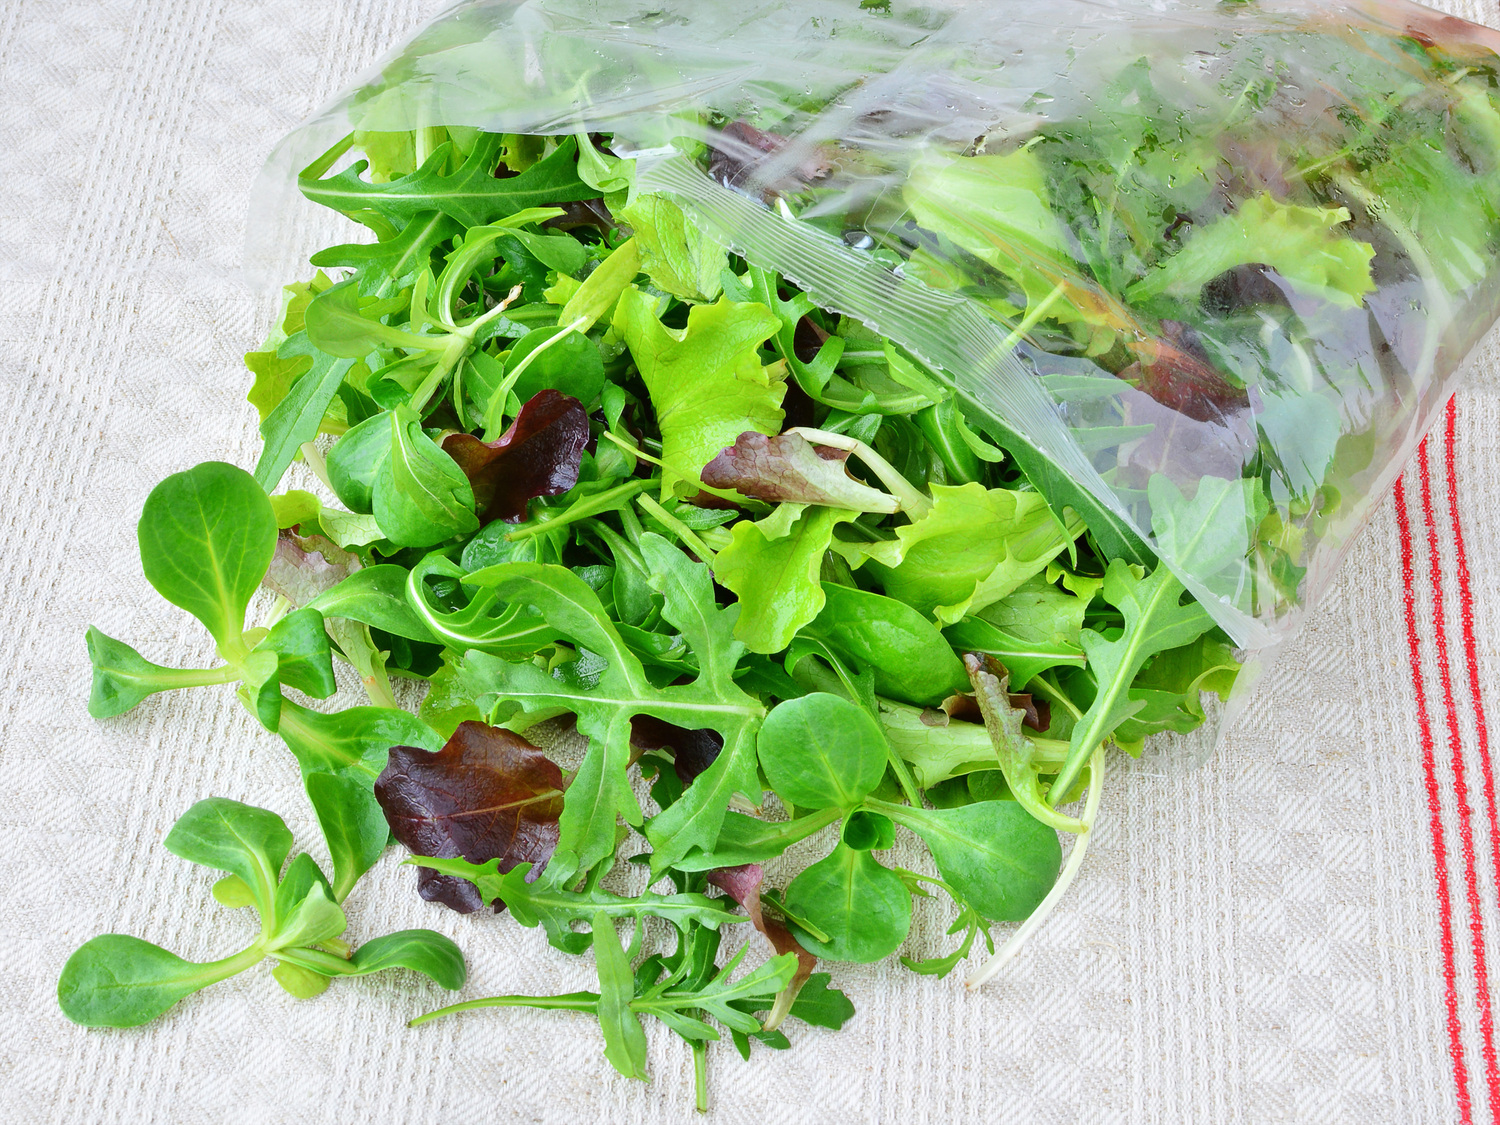 L'avis d'un ingénieur agro-alimentaire sur les salades en sachet